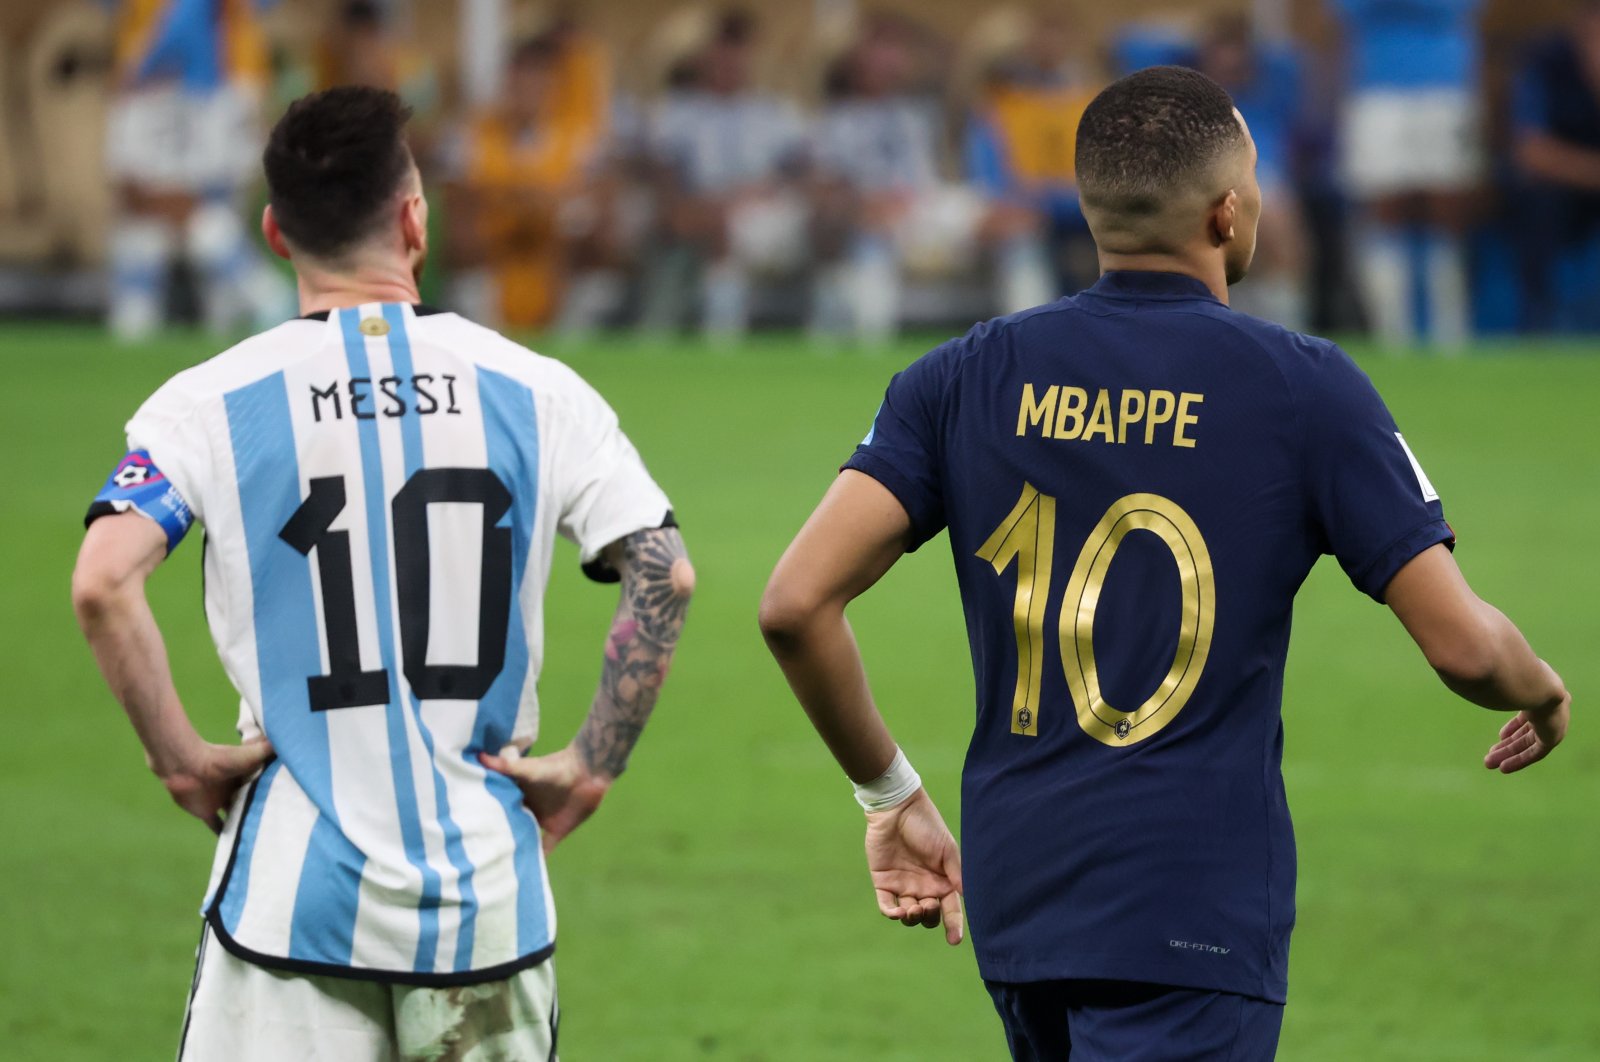 Juara dunia Messi melawan Mbappe, Benzema untuk penghargaan FIFA Best